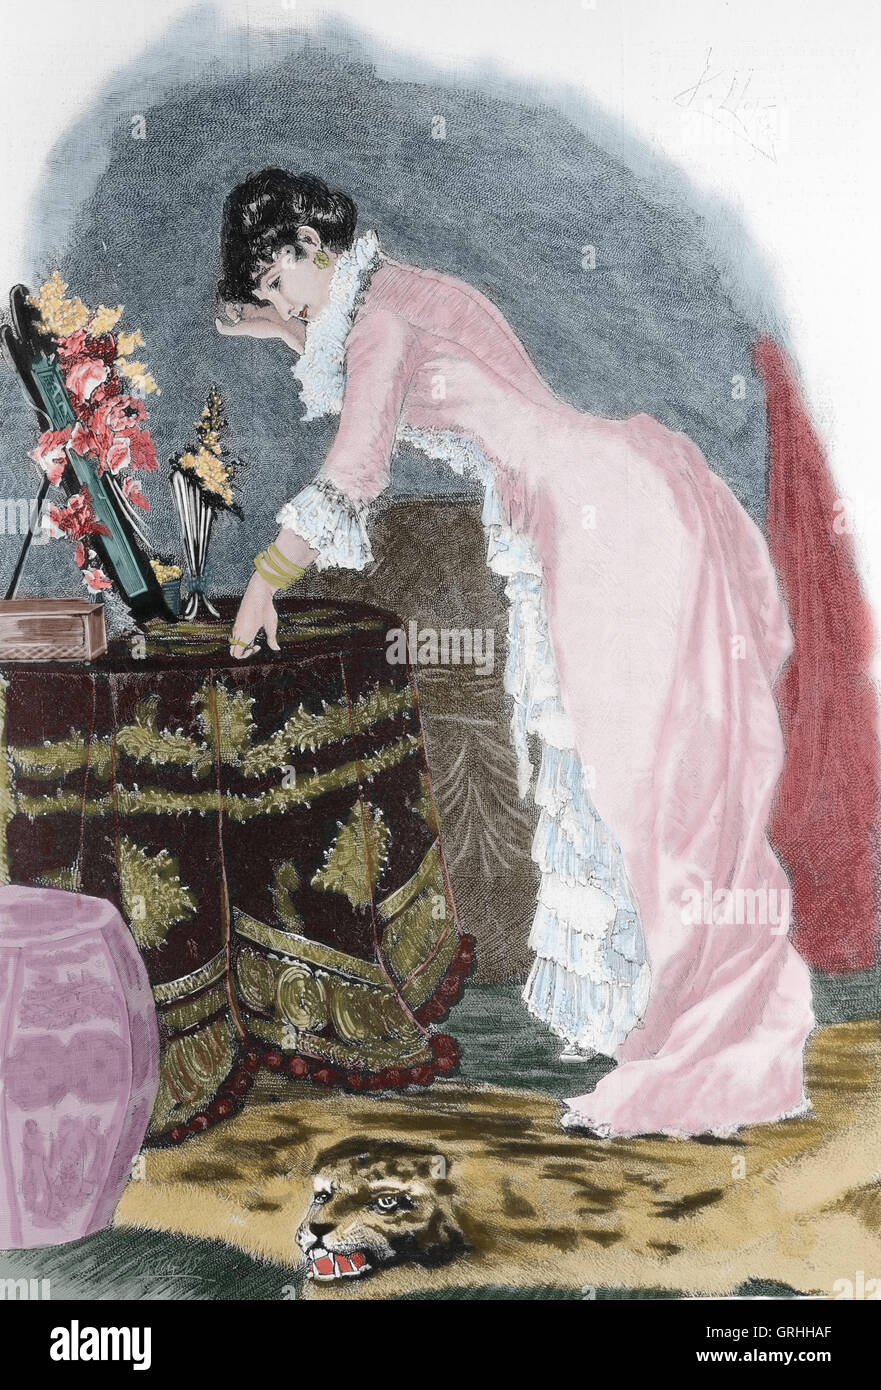 Femme bourgeoise. Gravure par Artigas. La Ilustracion Artistica, 1885, de l'Espagne.1885. Banque D'Images